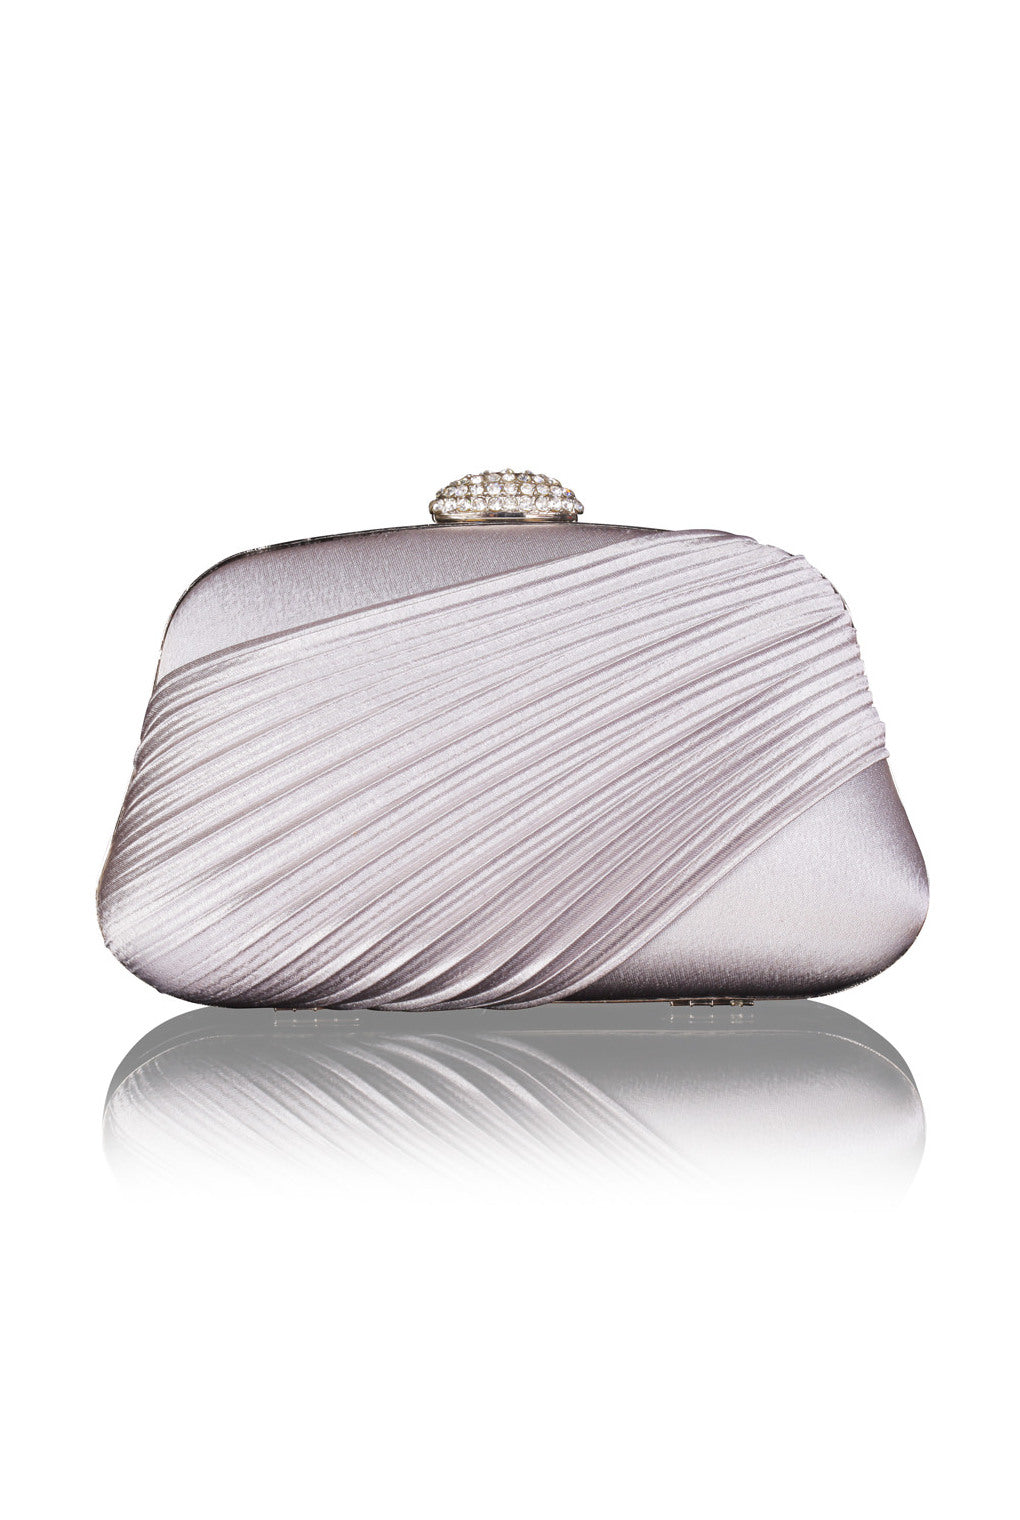 Mushira Crystal Elegant Evening Bag